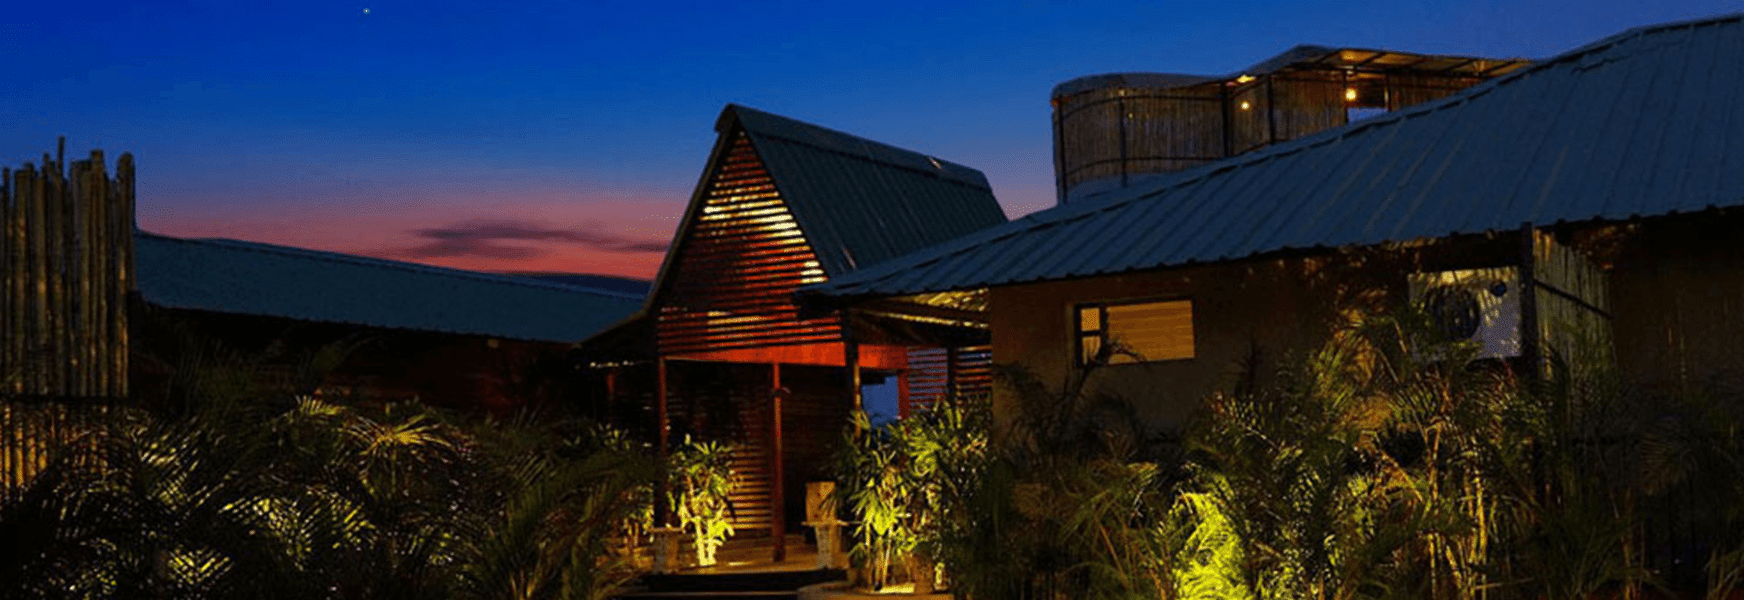 Nilaya Resort Image